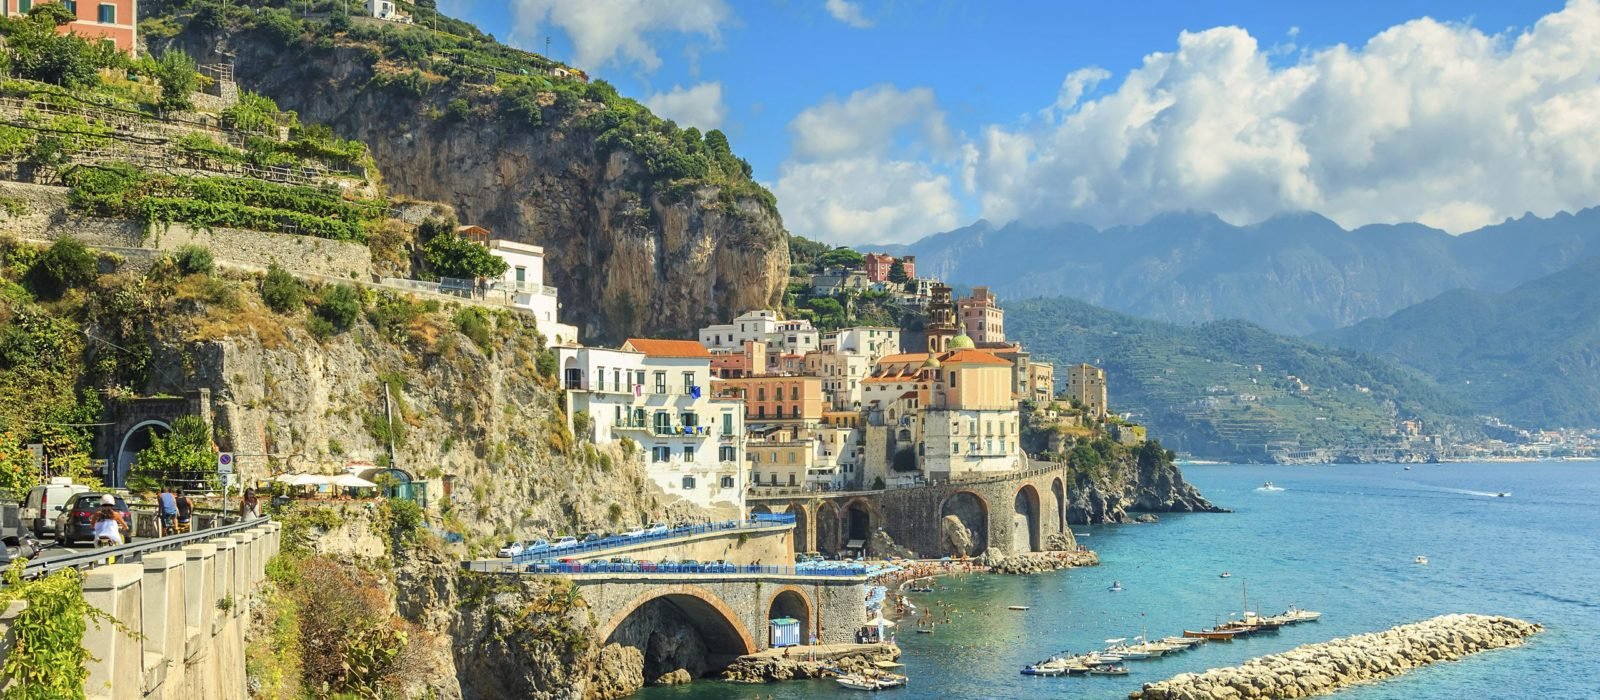 Italy coastline